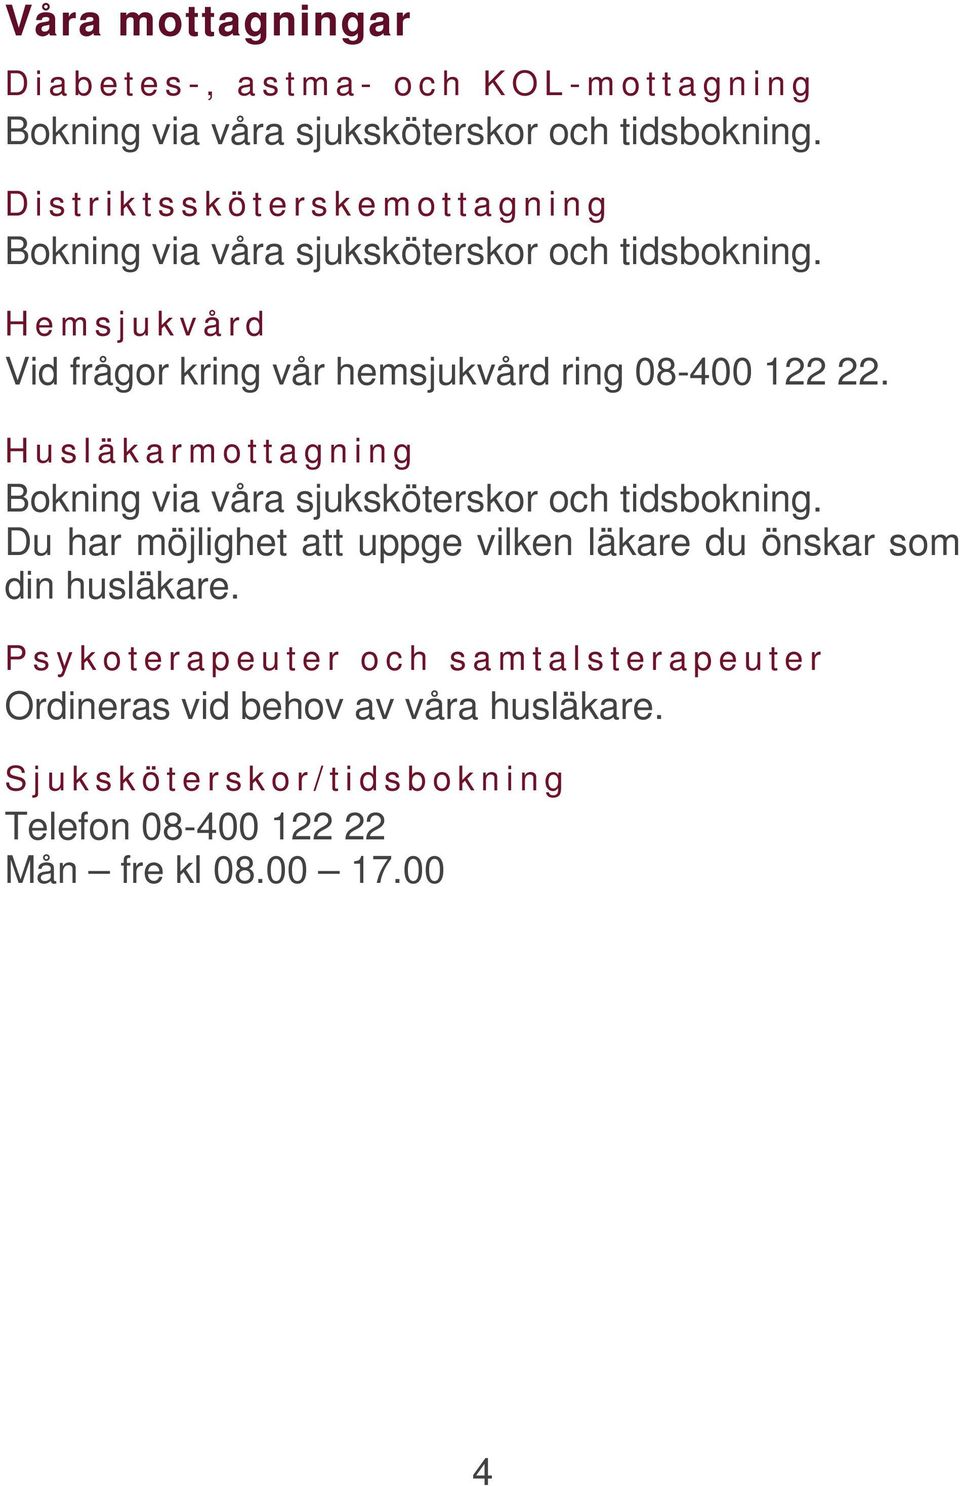 Hemsjukvård Vid frågor kring vår hemsjukvård ring 08-400 122 22. Husläkarmottagning Bokning via våra sjuksköterskor och tidsbokning.